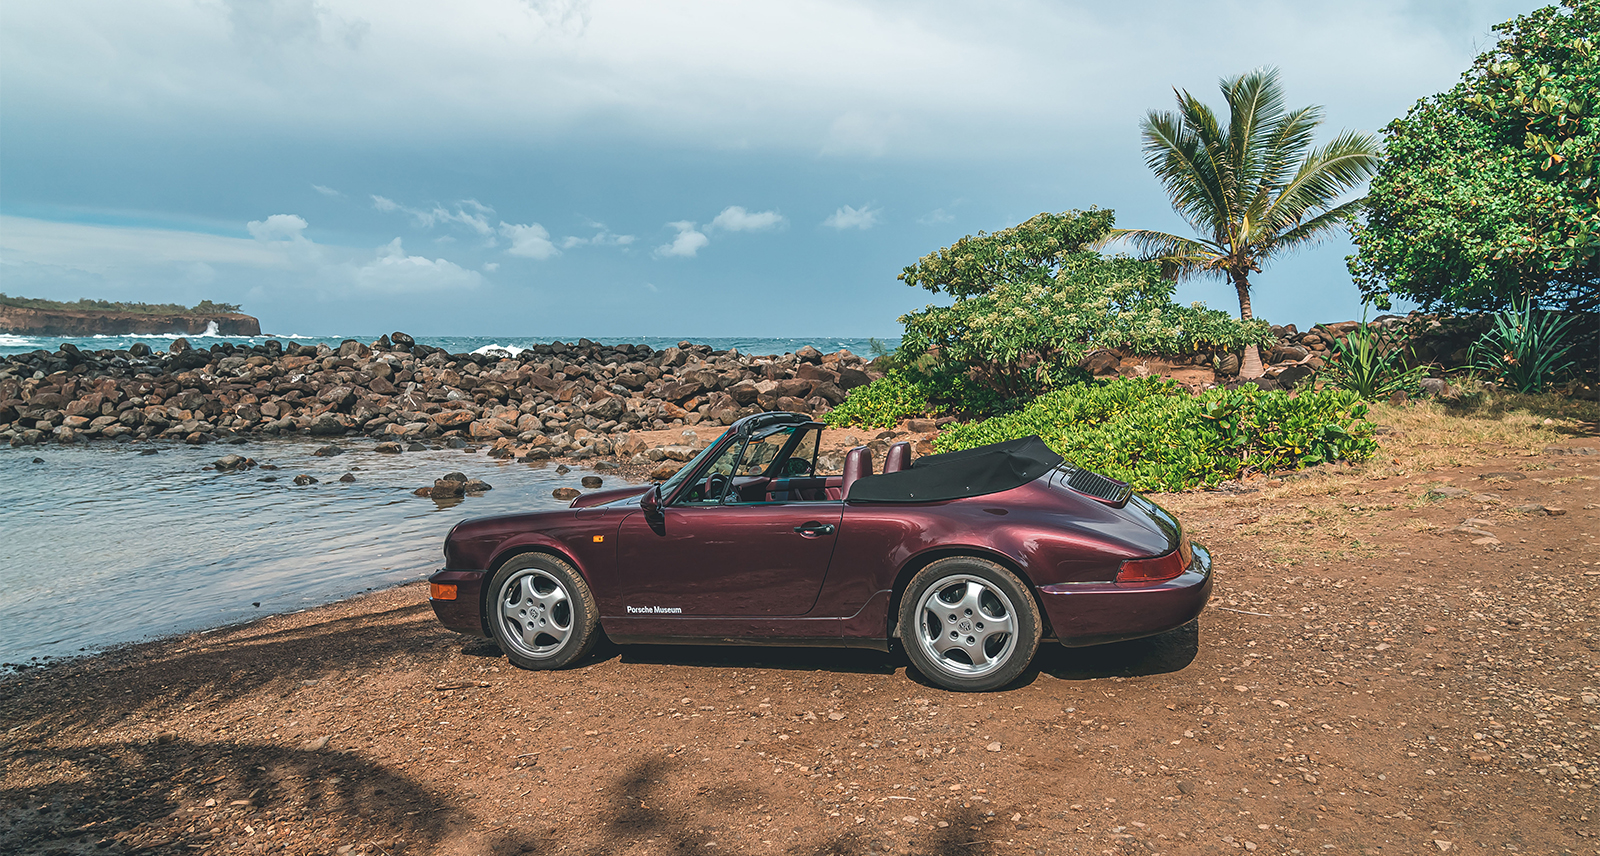 Hawaii Porsche 911 spring 22 feature